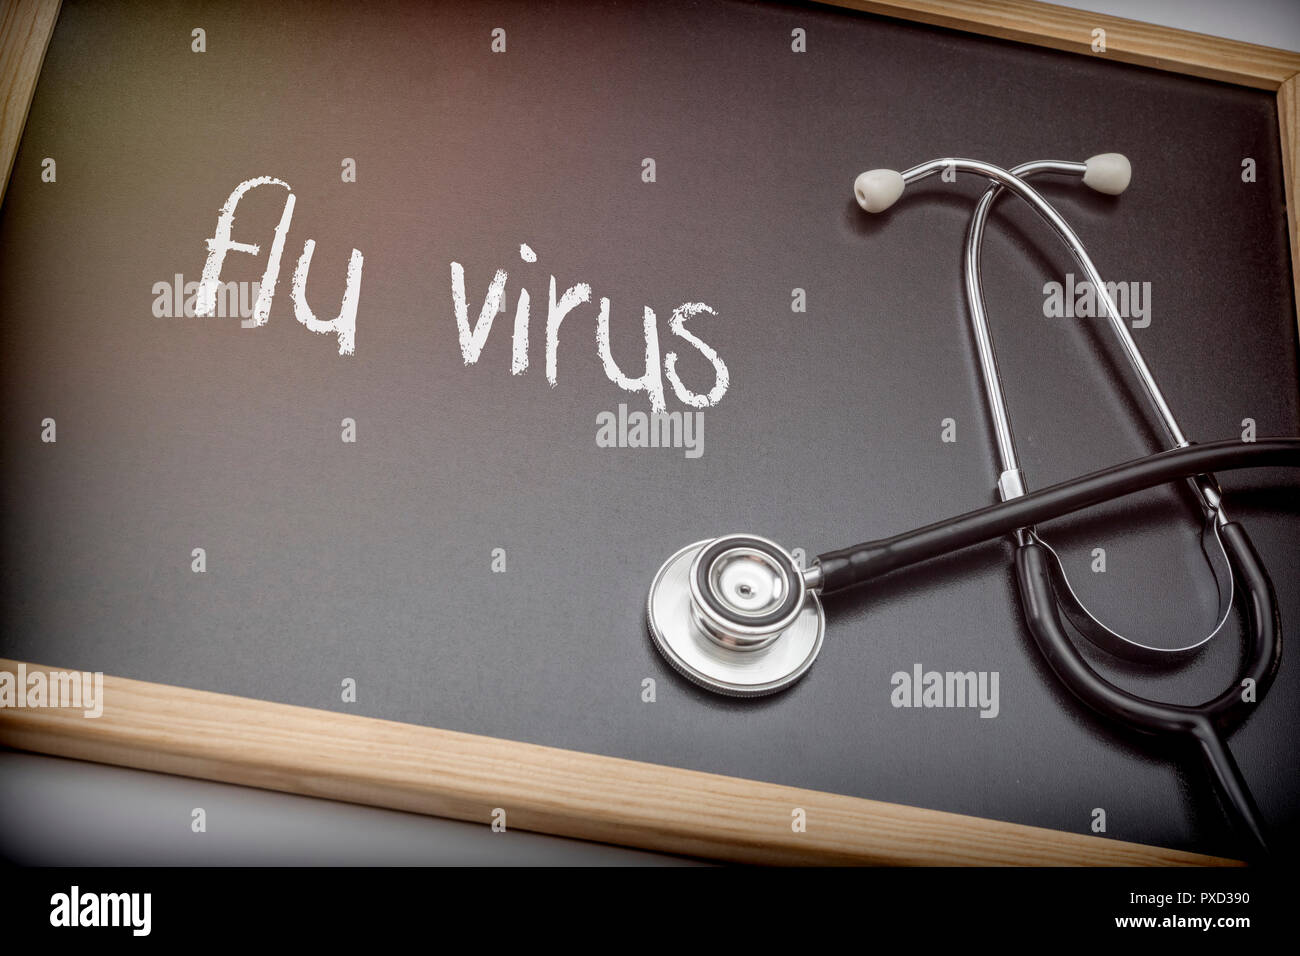 Parola flu viris scritto in gesso su una lavagna nera accanto a uno stetoscopio, immagine concettuale Foto Stock